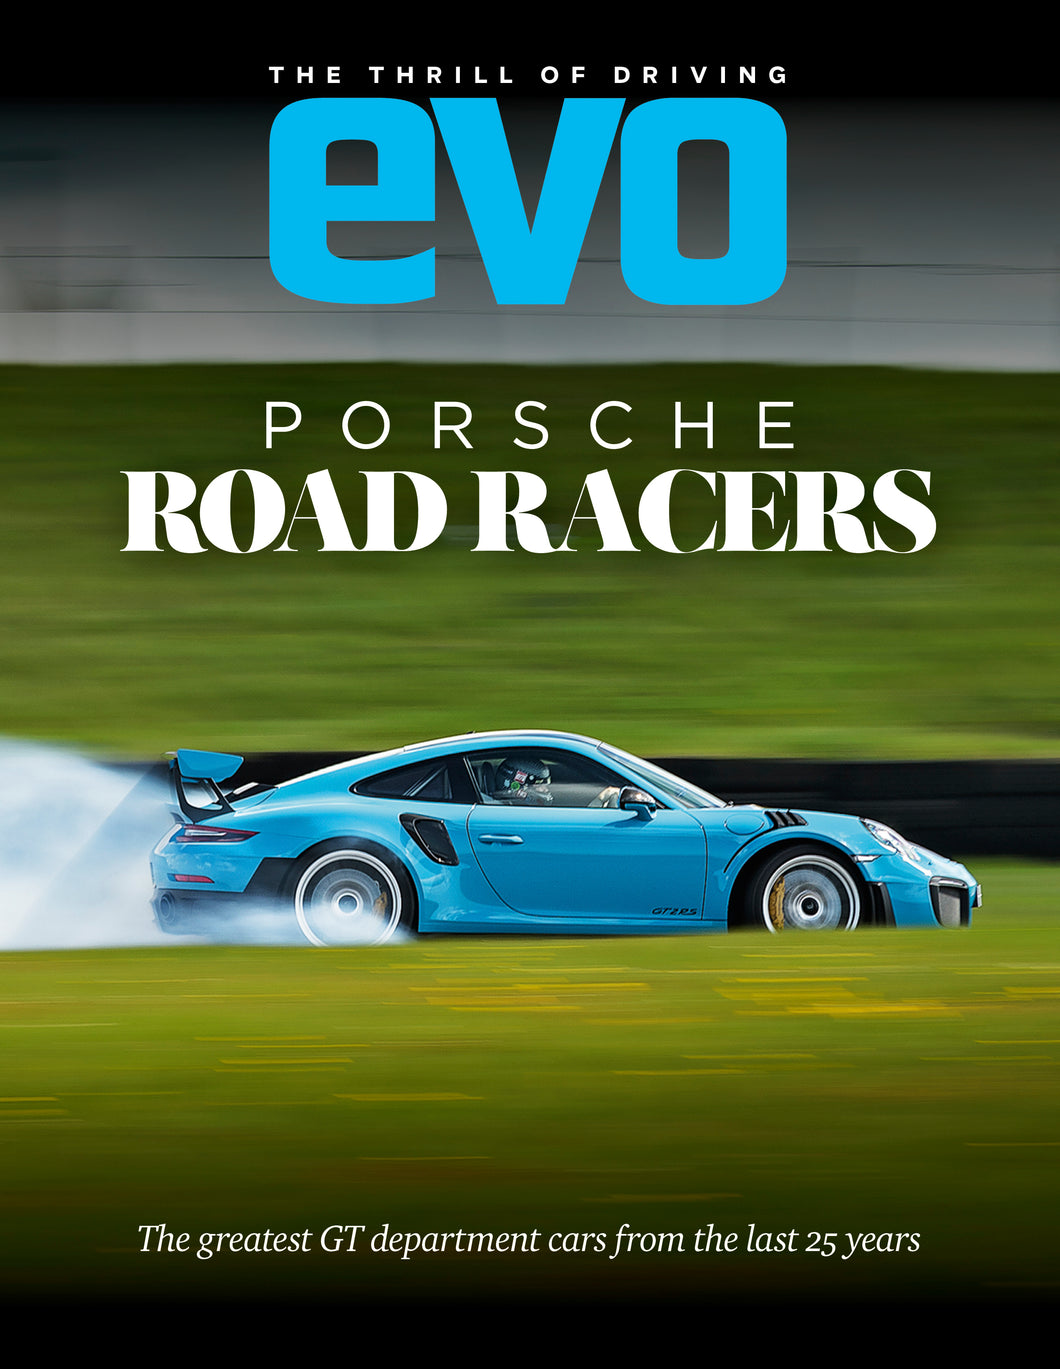 evo - Porsche Road Racers